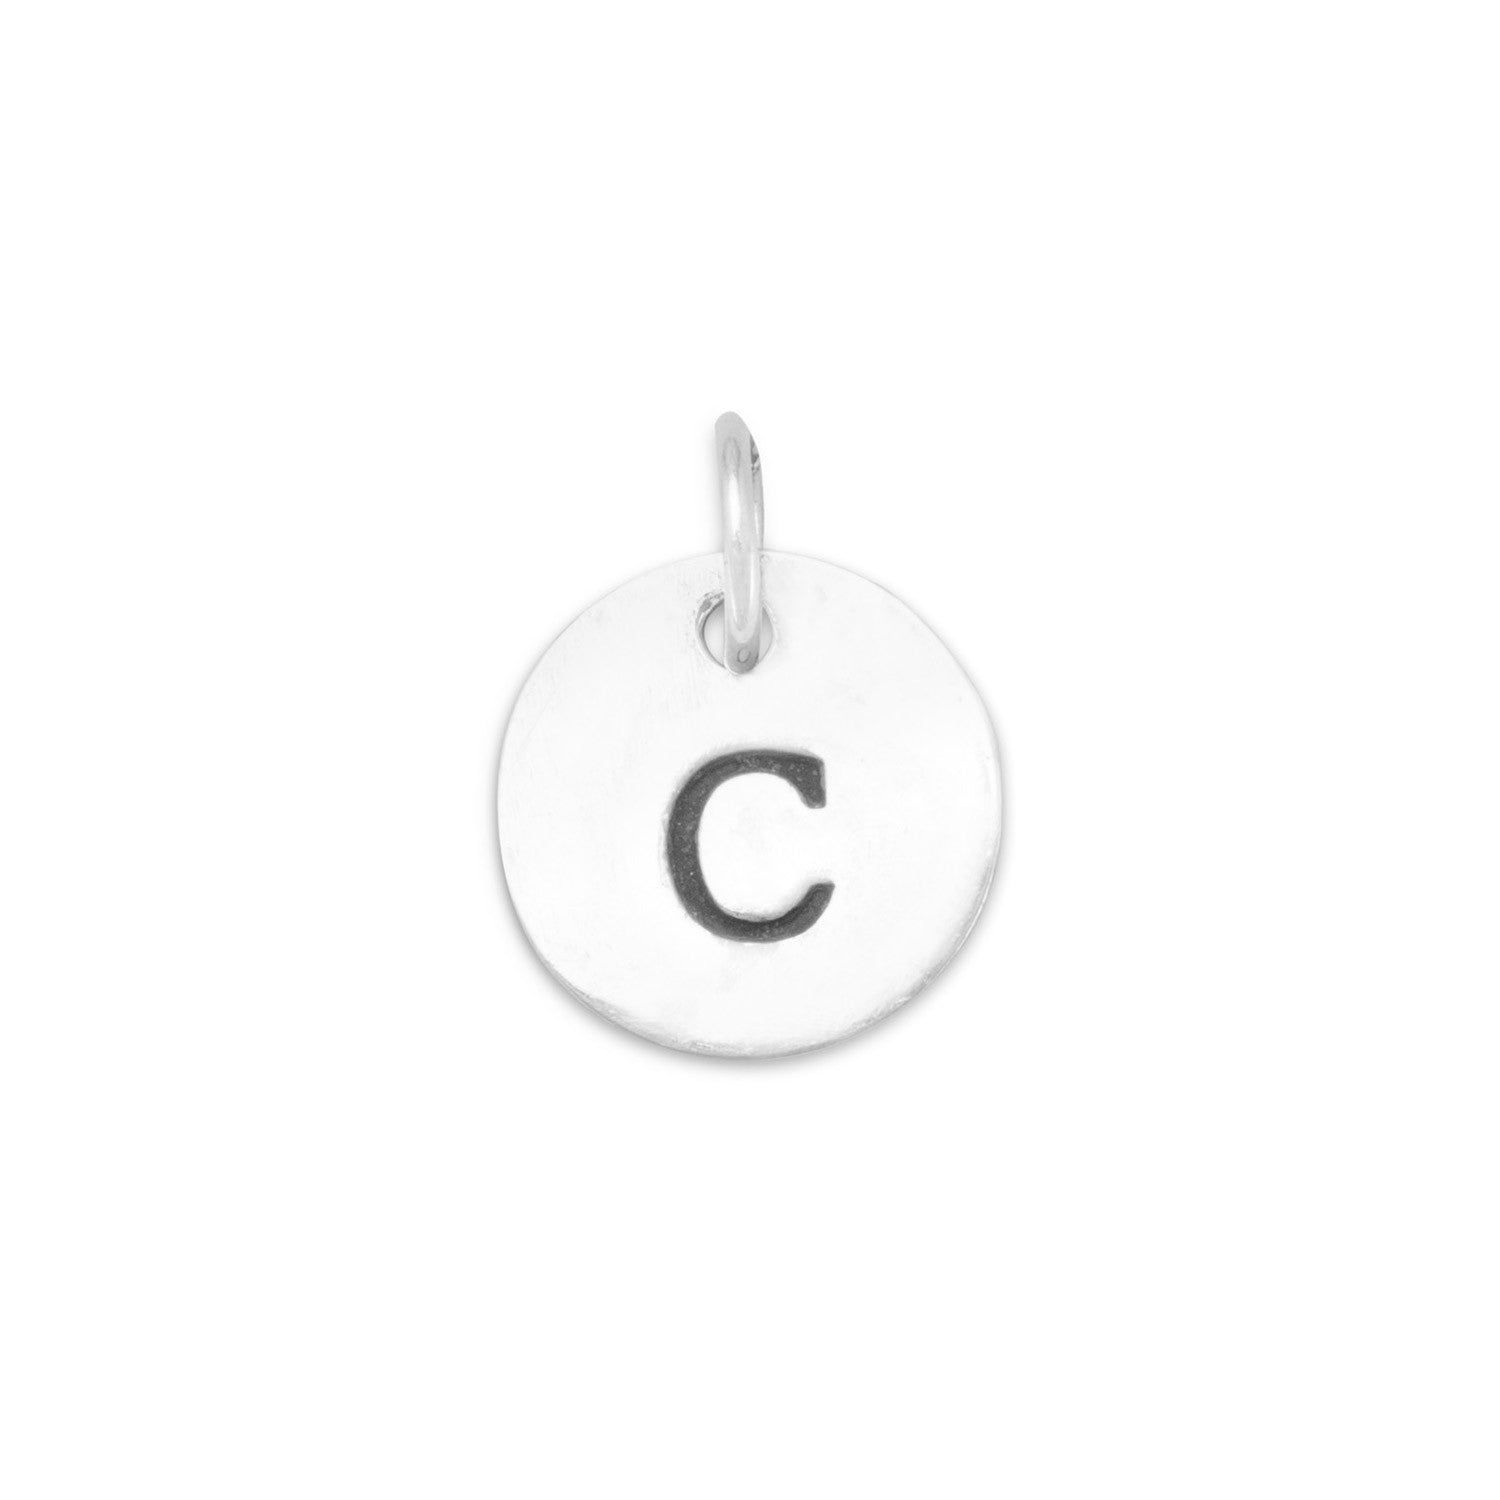 Oxidized Initial "C" Charm